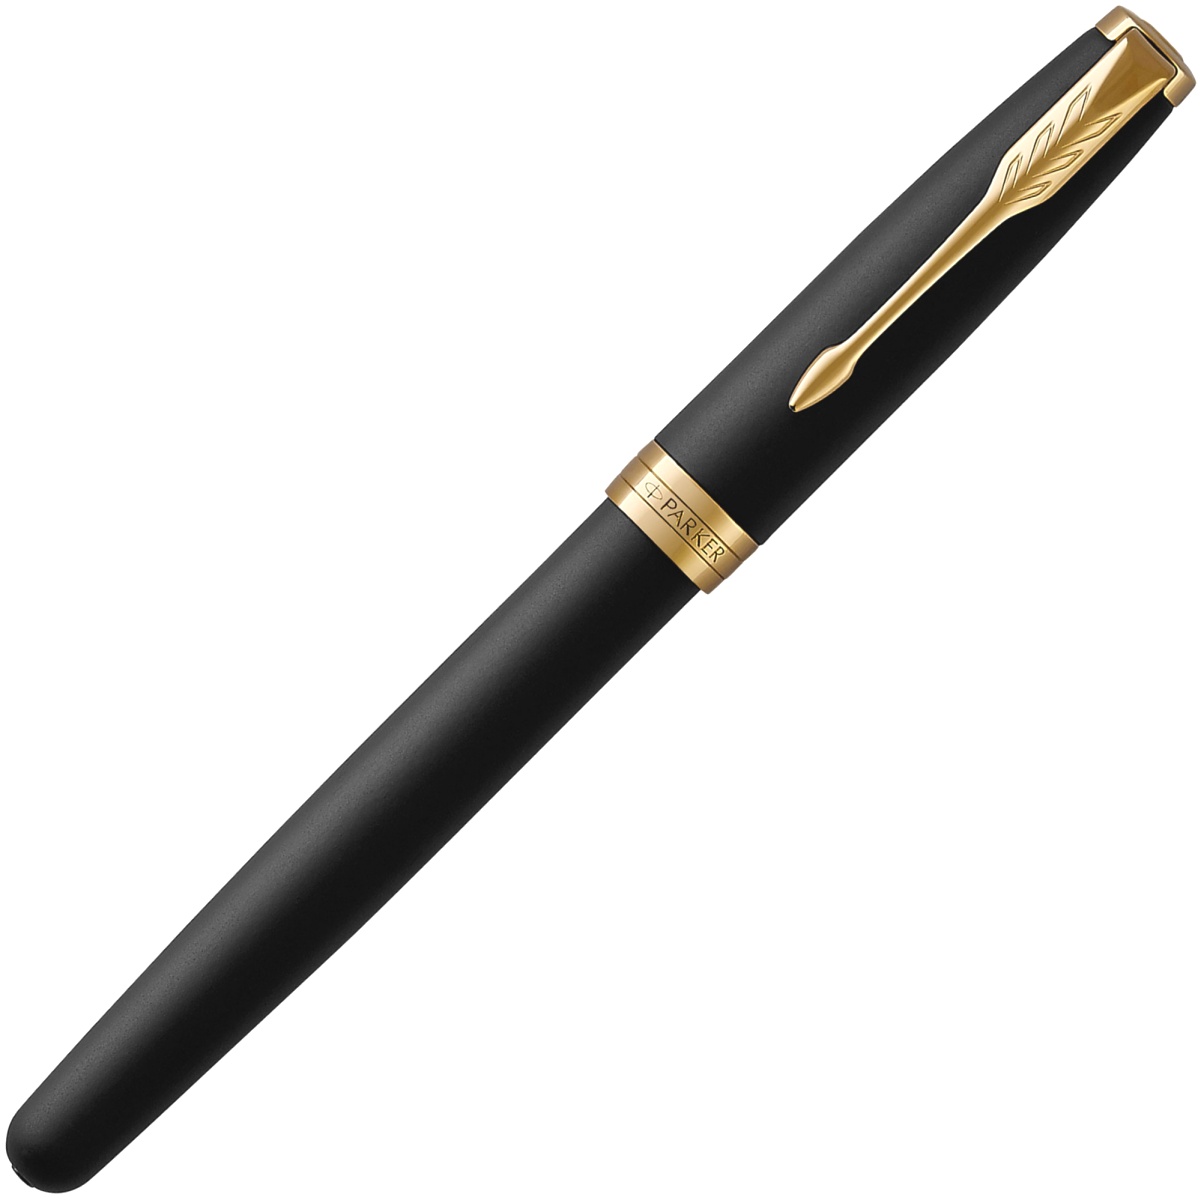  Перьевая ручка Parker Sonnet Core F528, Matte Black GT (Перо F), фото 2